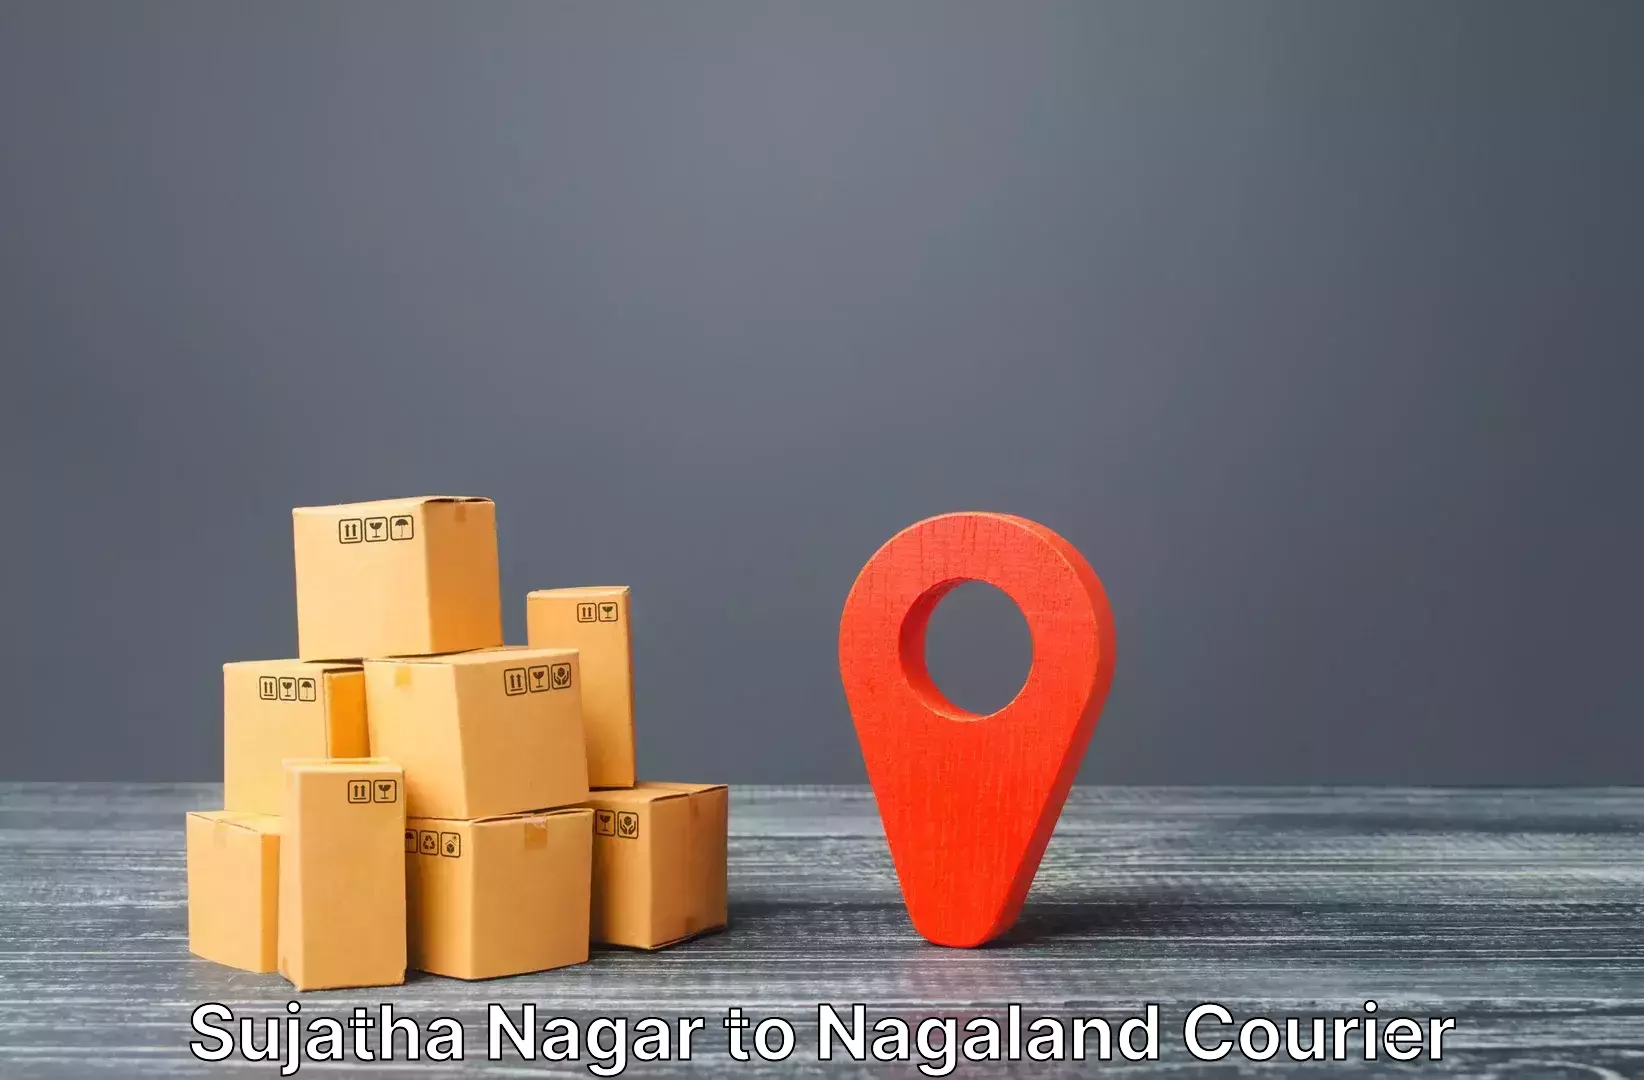 Baggage transport innovation in Sujatha Nagar to NIT Nagaland